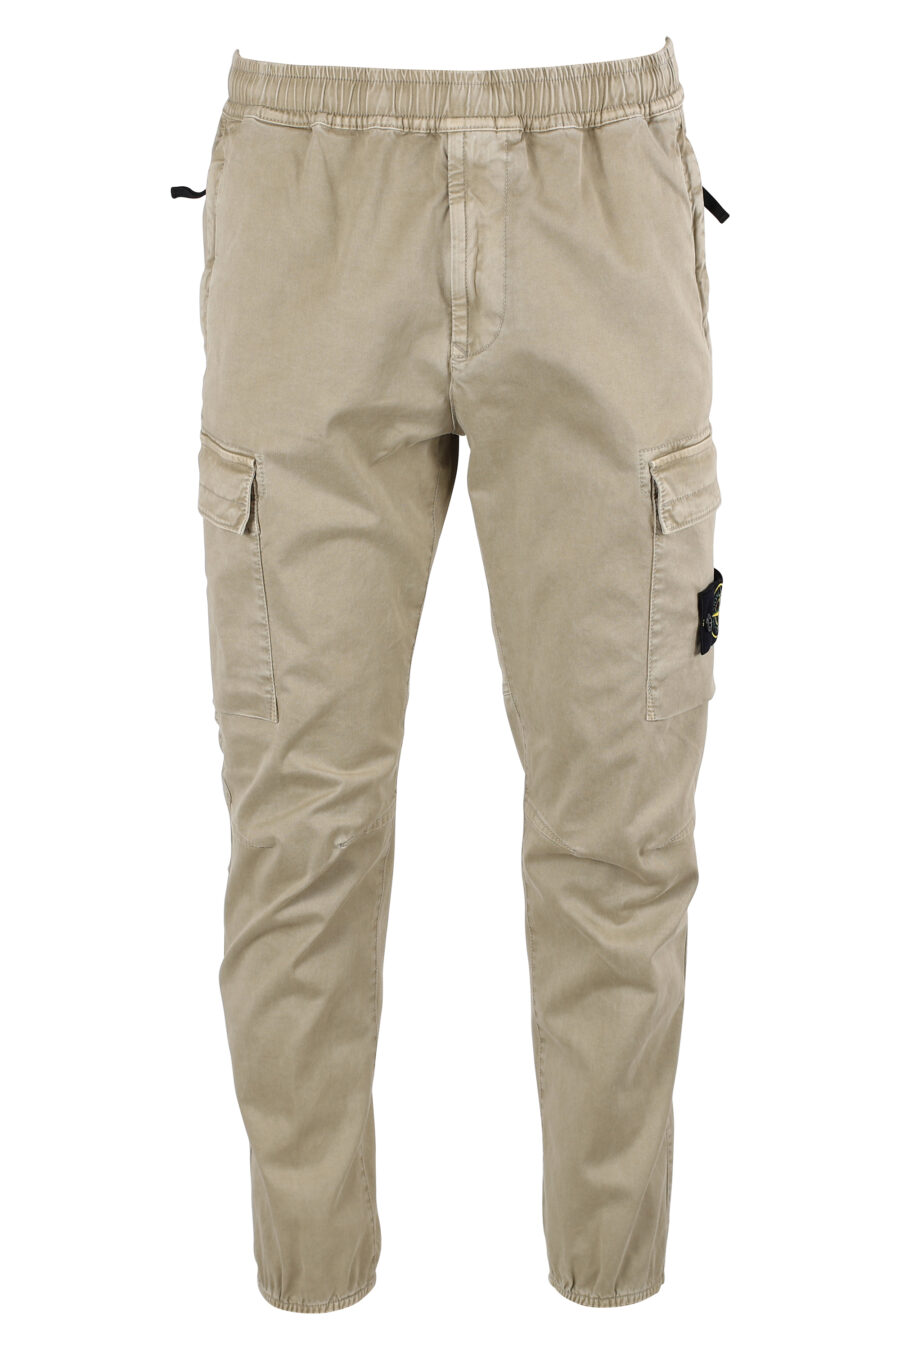 Pantalon cargo beige avec patch latéral - IMG 8325